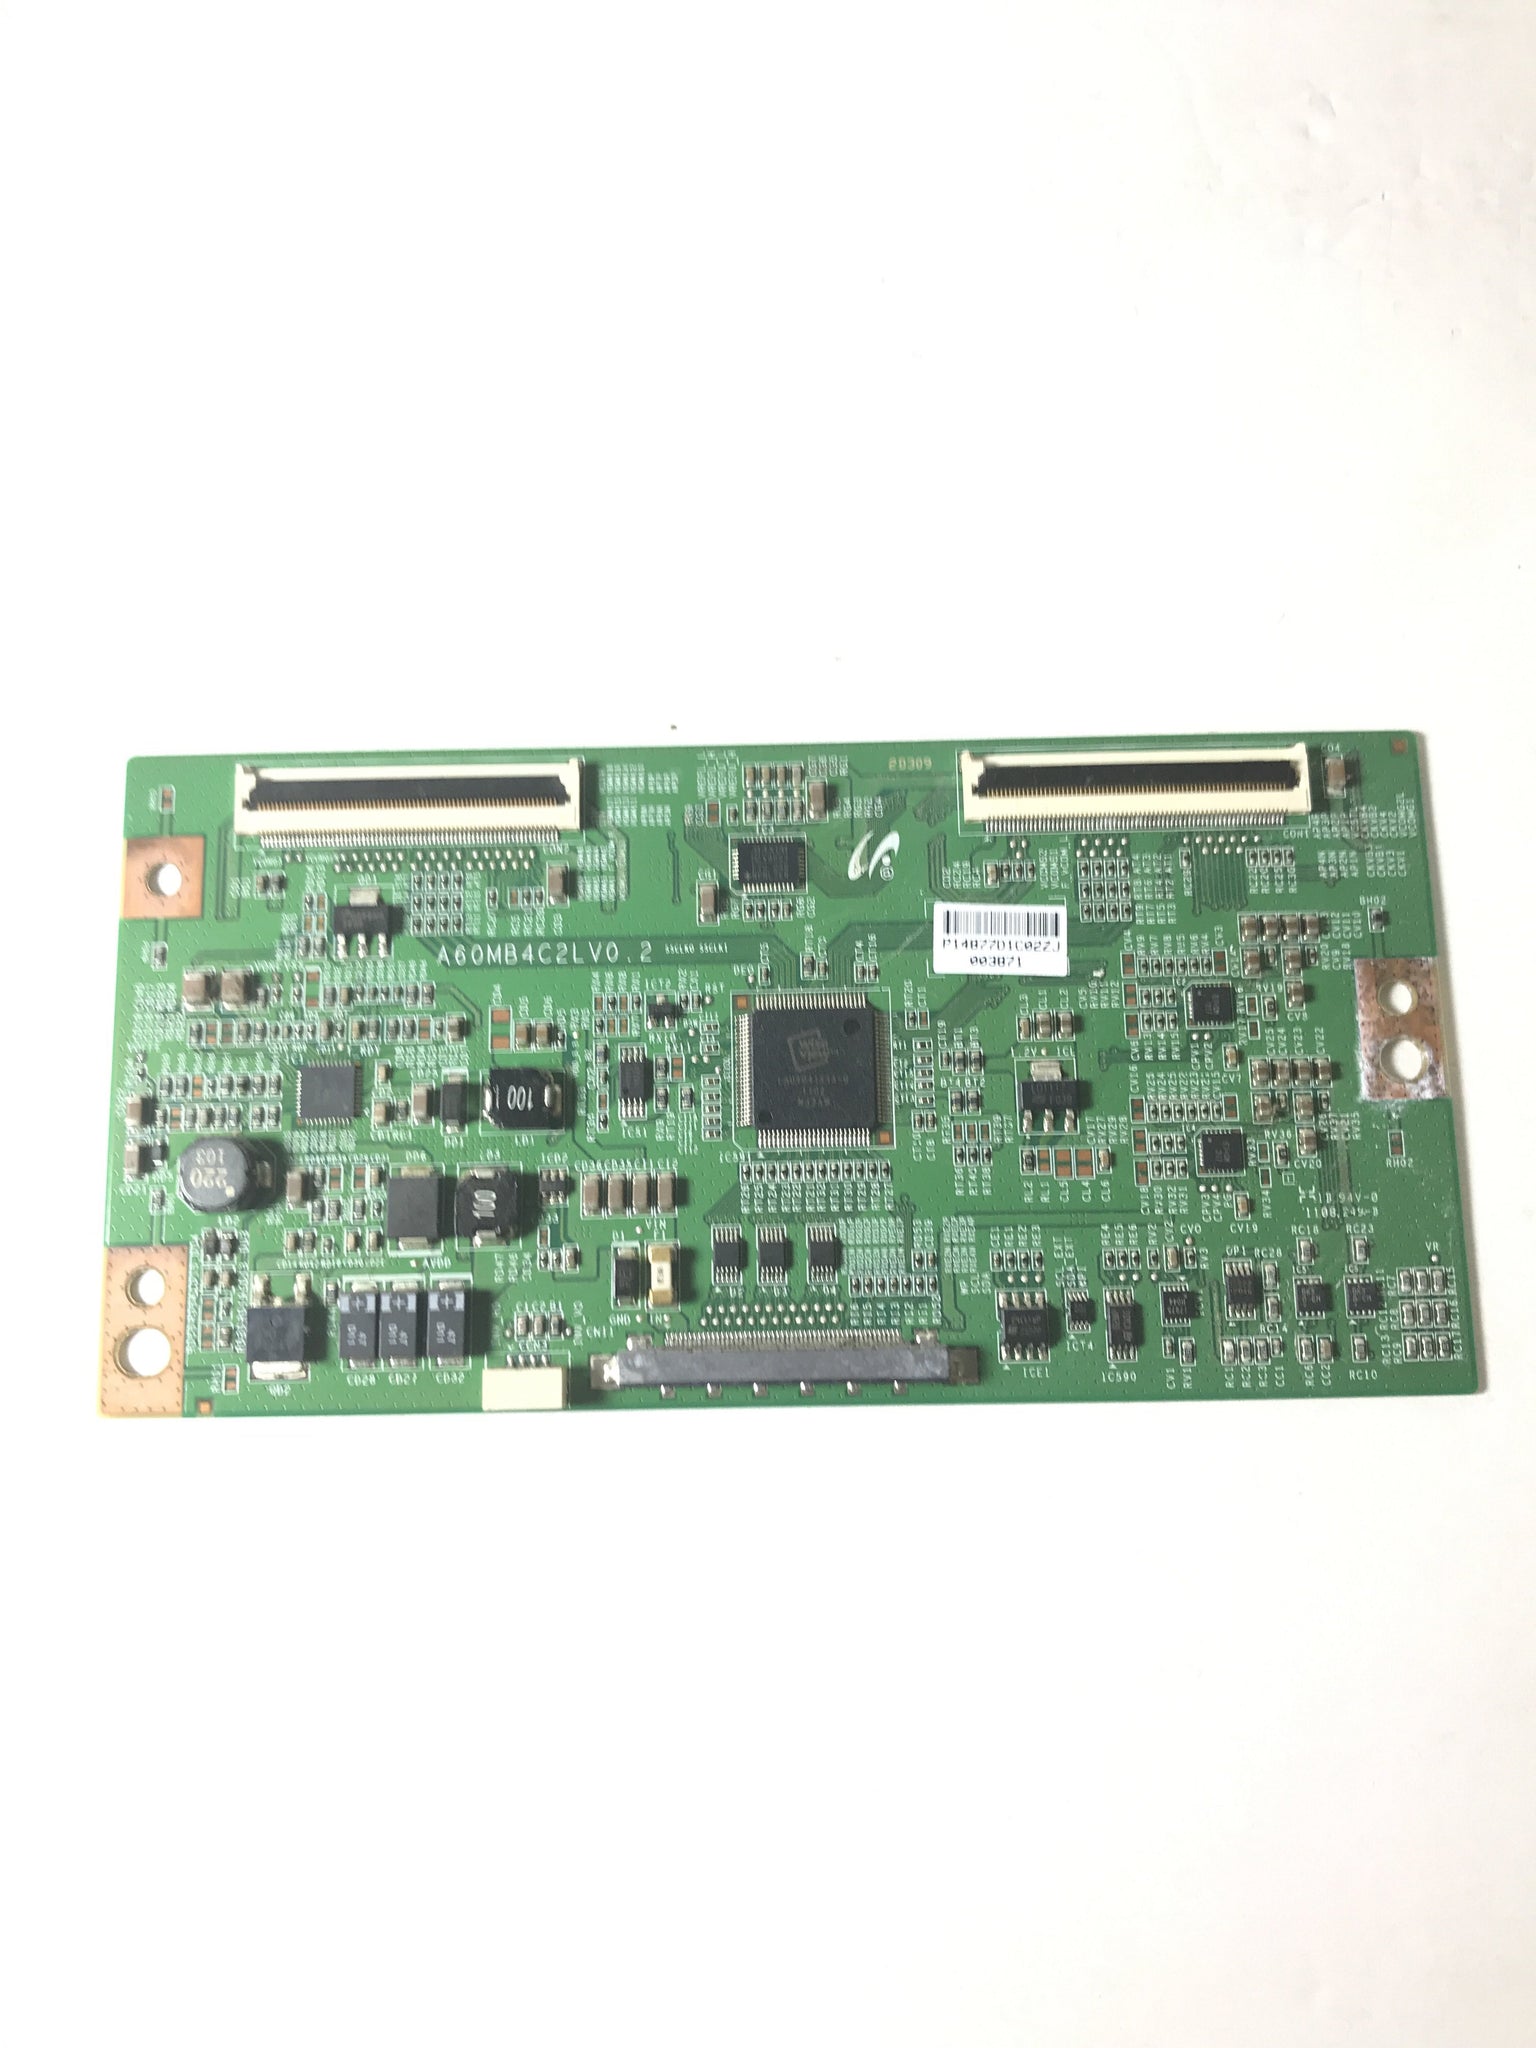 Dynex LJ94-14877D (A60MB4C2LV0.2) T-Con Board for DX-46L260A12